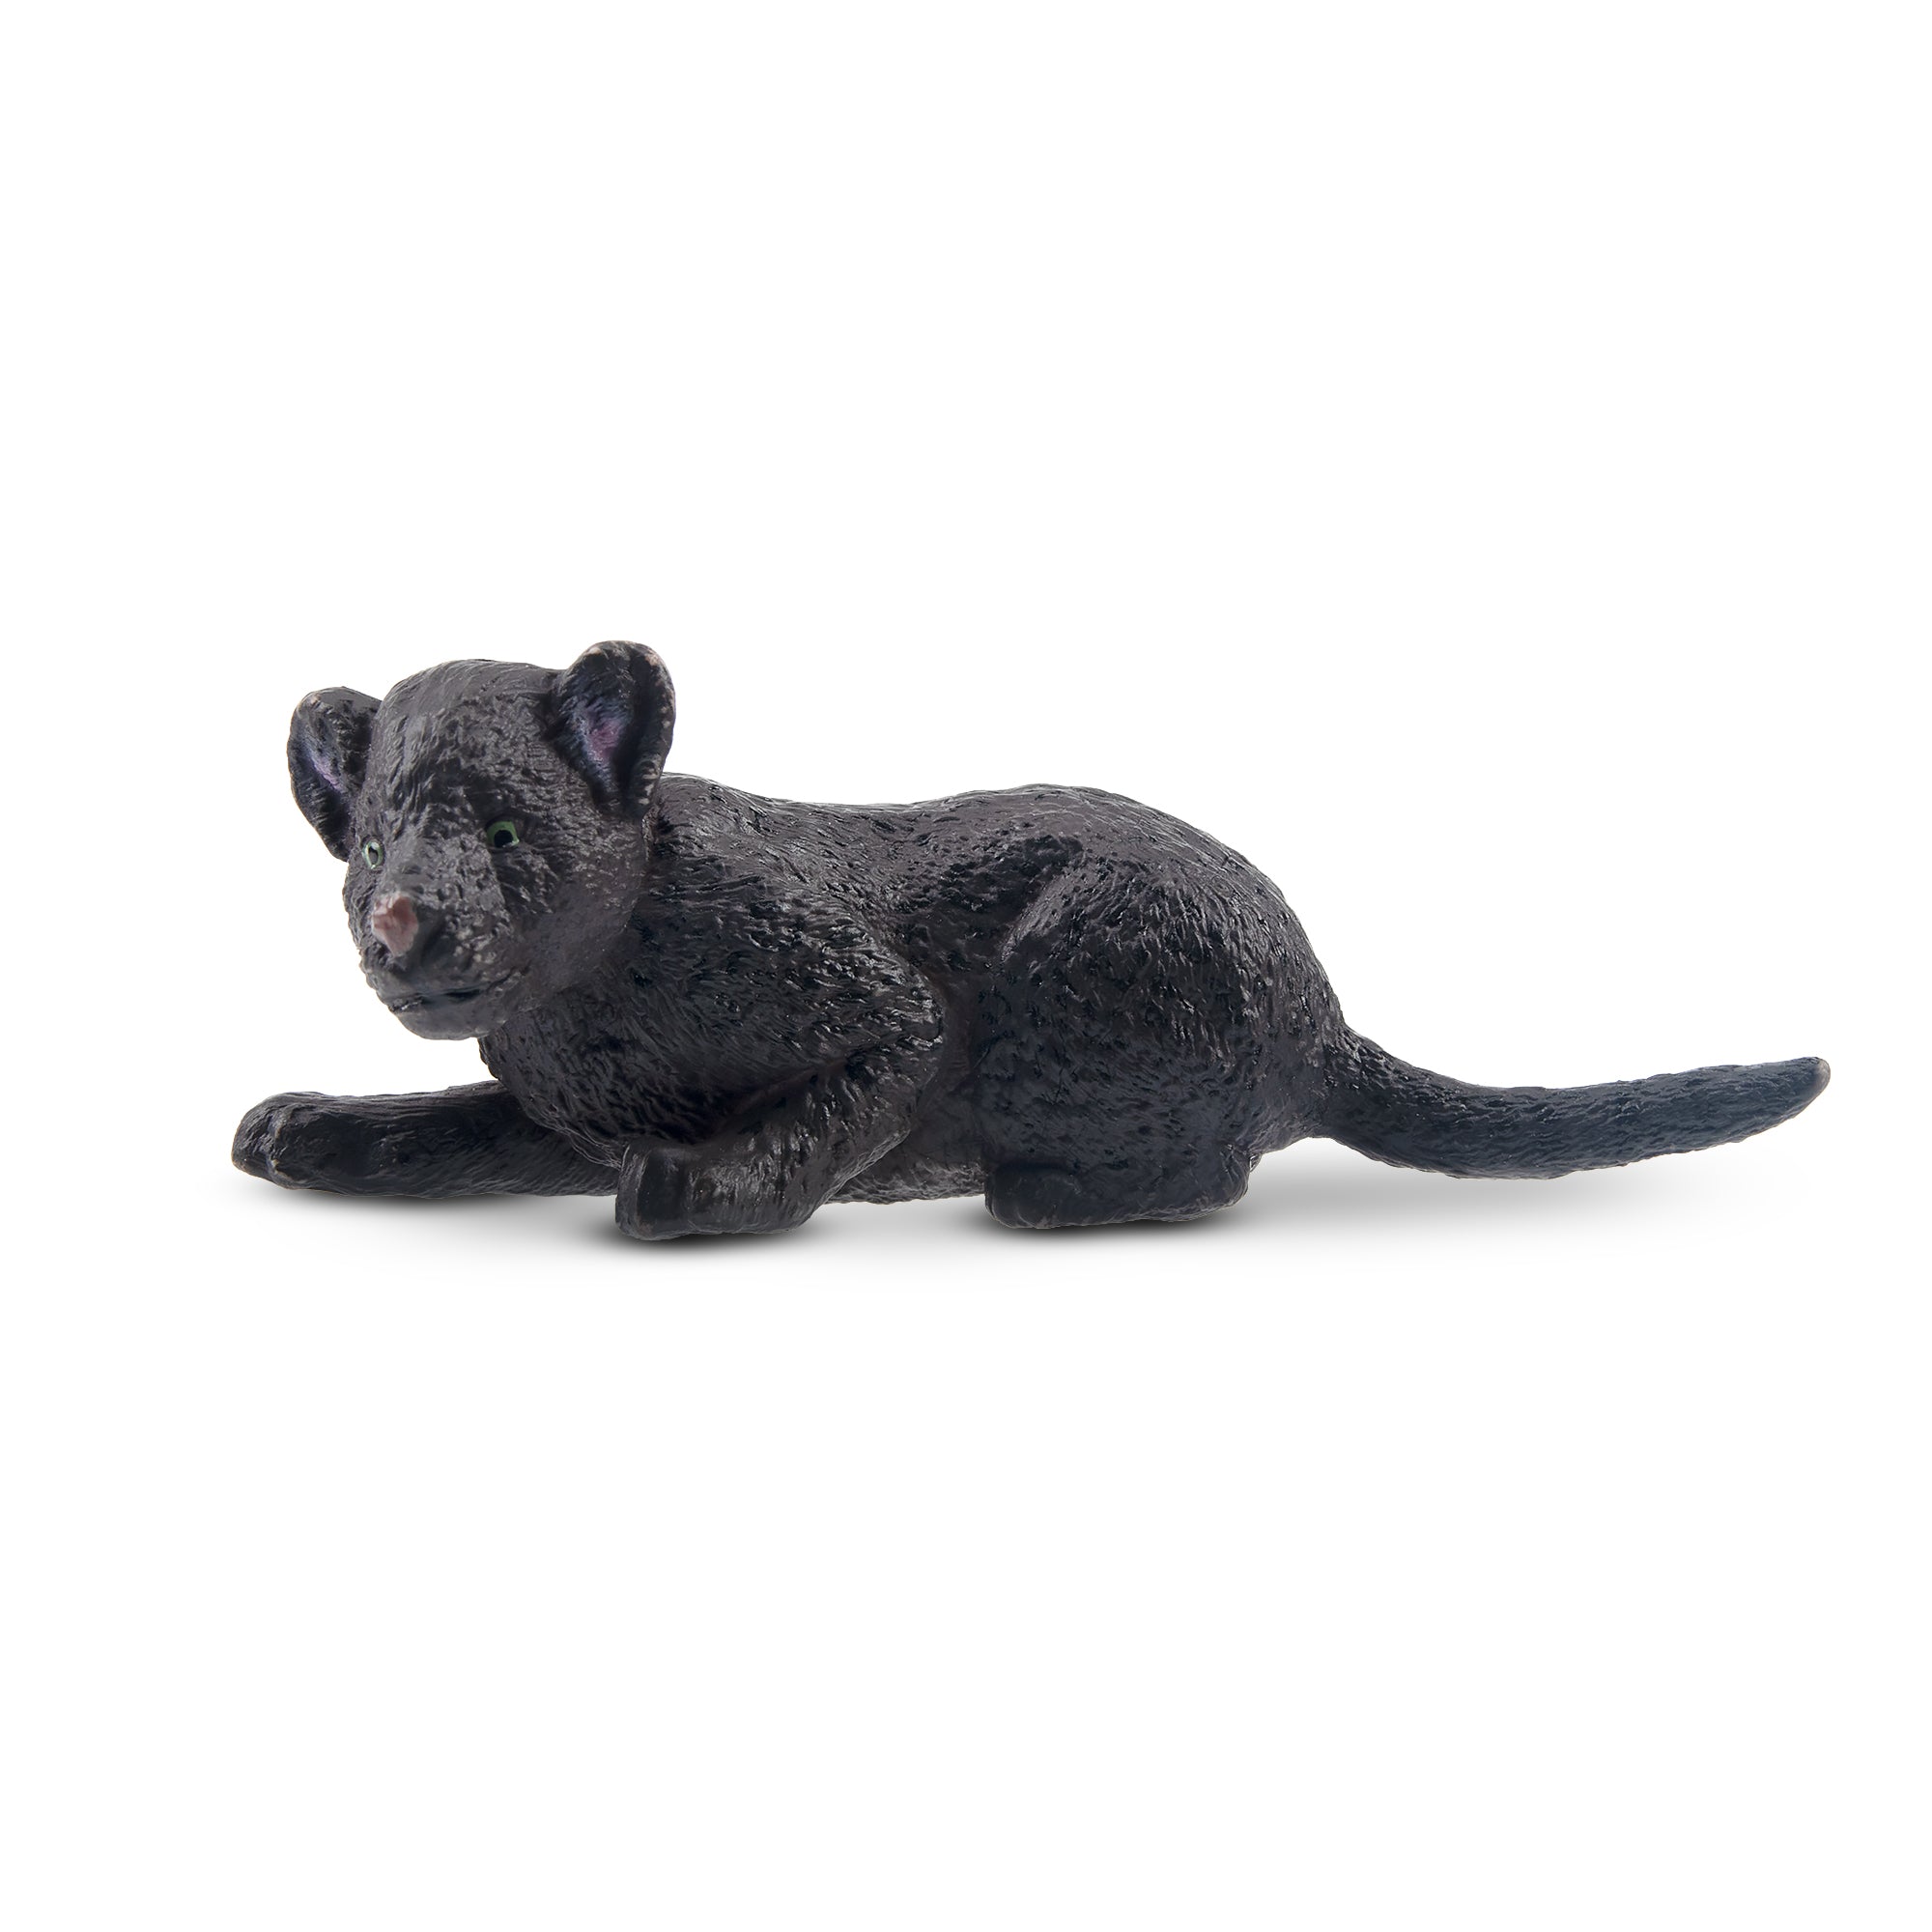 Toymany Lying Black Leopard Cub Figurine Toy